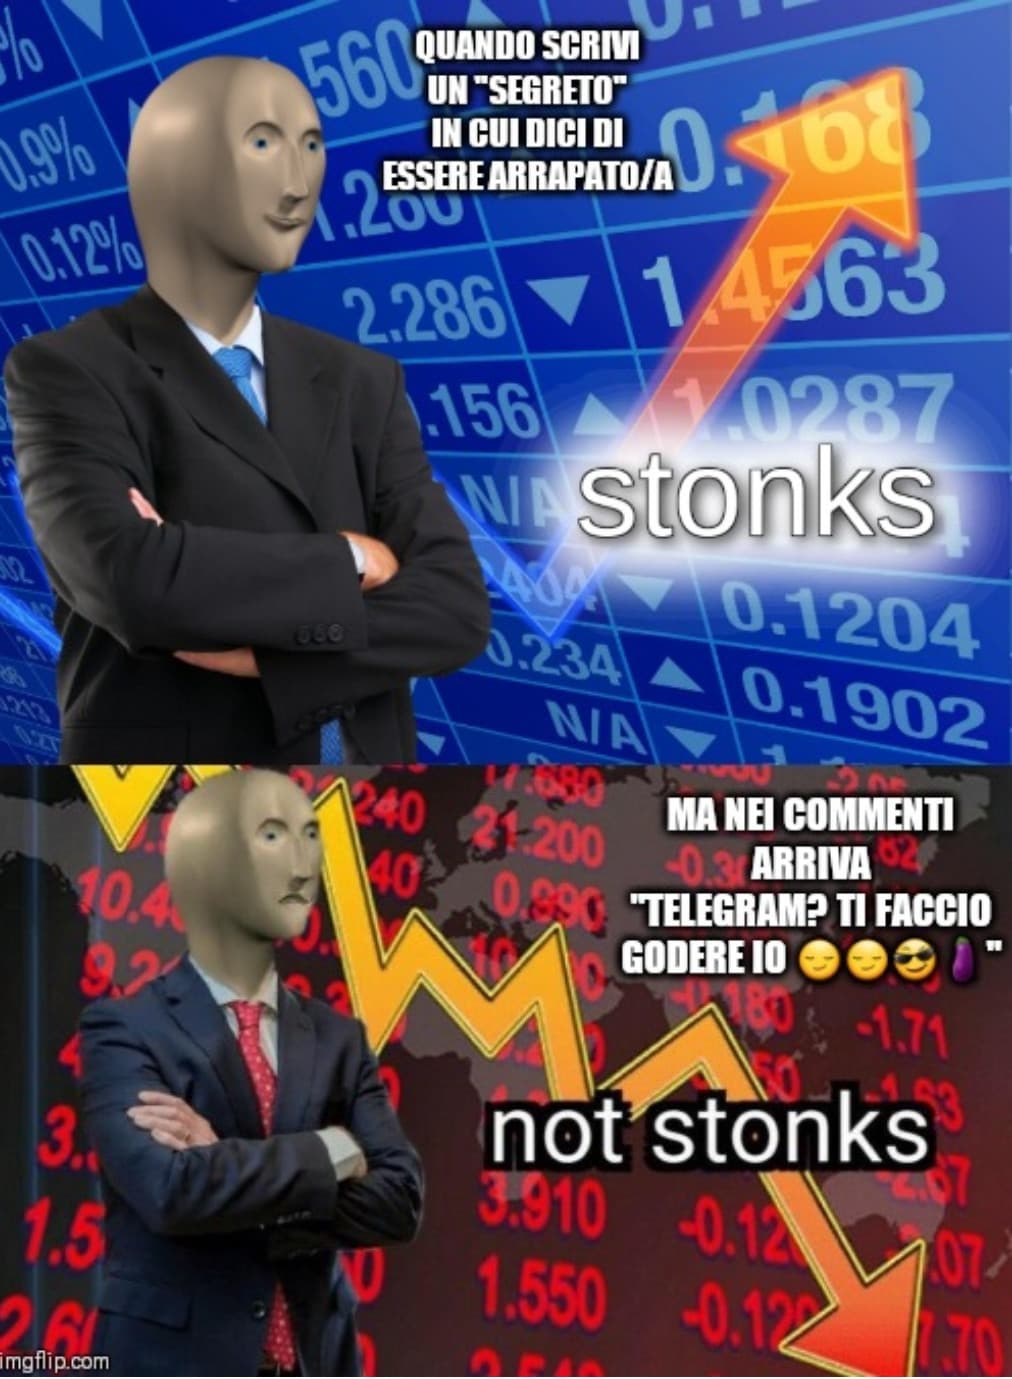 "Stonks" best meme evah